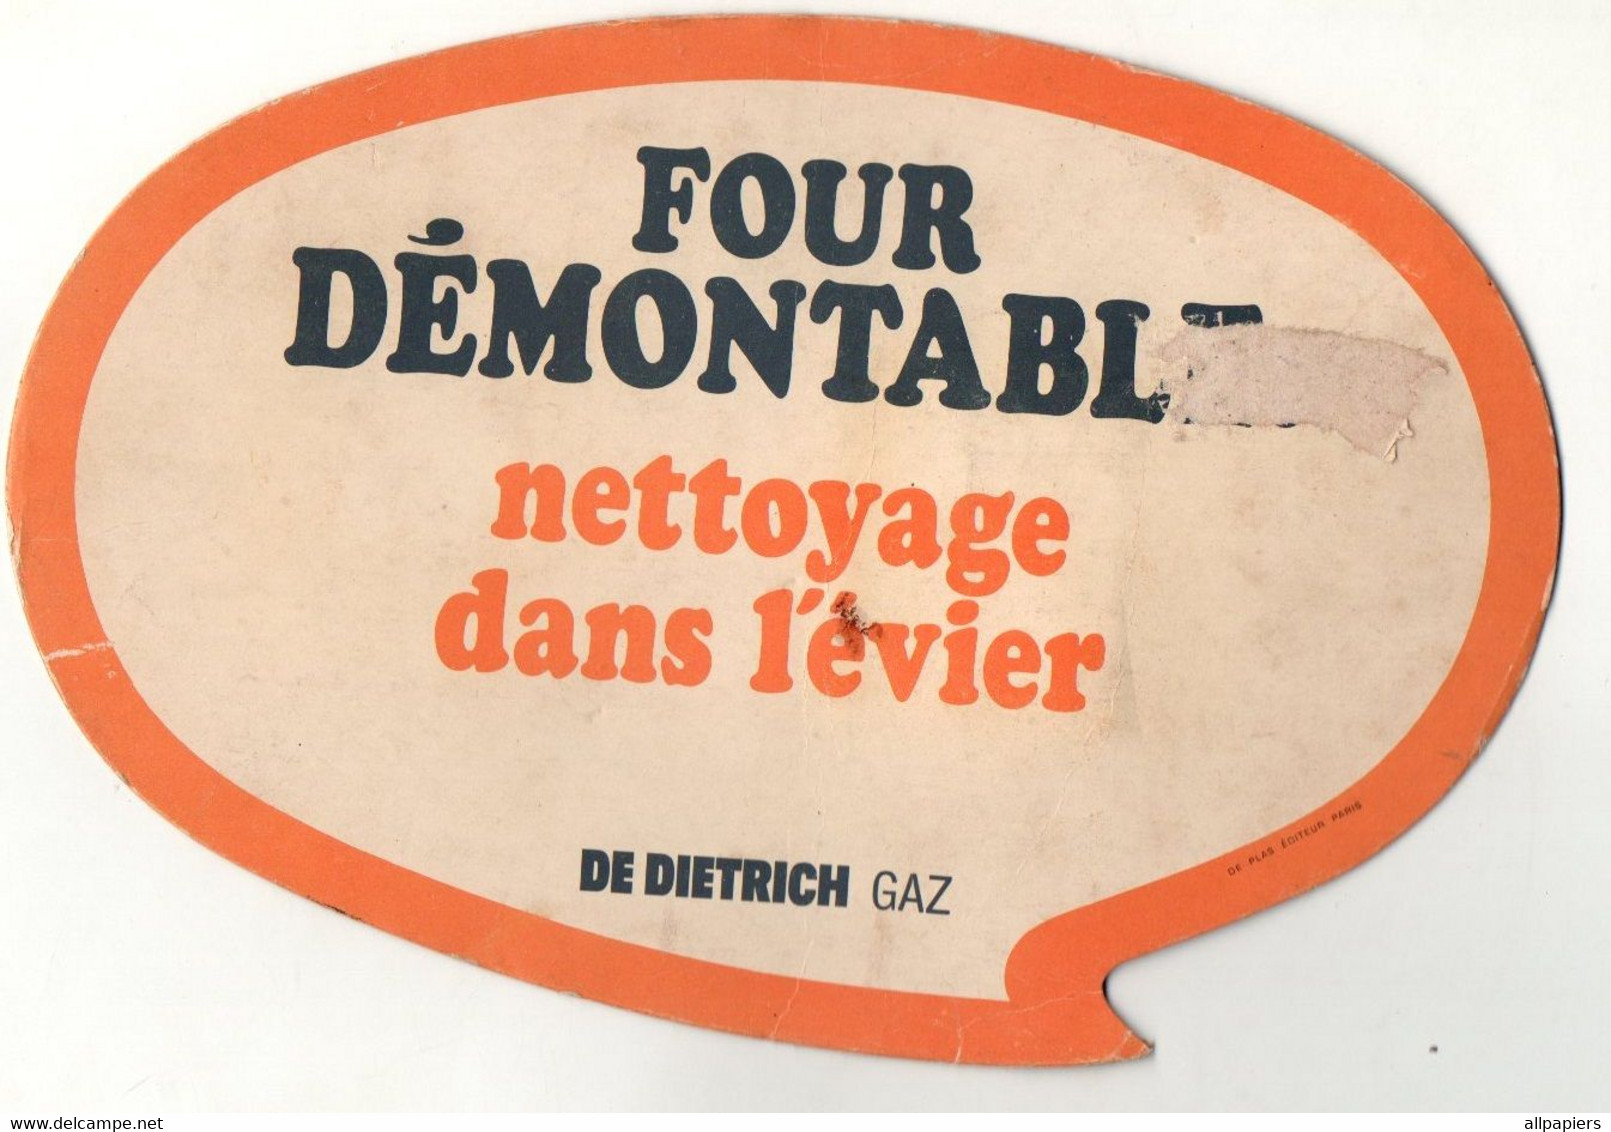 Magnet Publicitaire En Carton Four Démontable Nettoyage Dans L'évier De Dietrich Gaz - Format : 22x14.5 Cm - Reclame